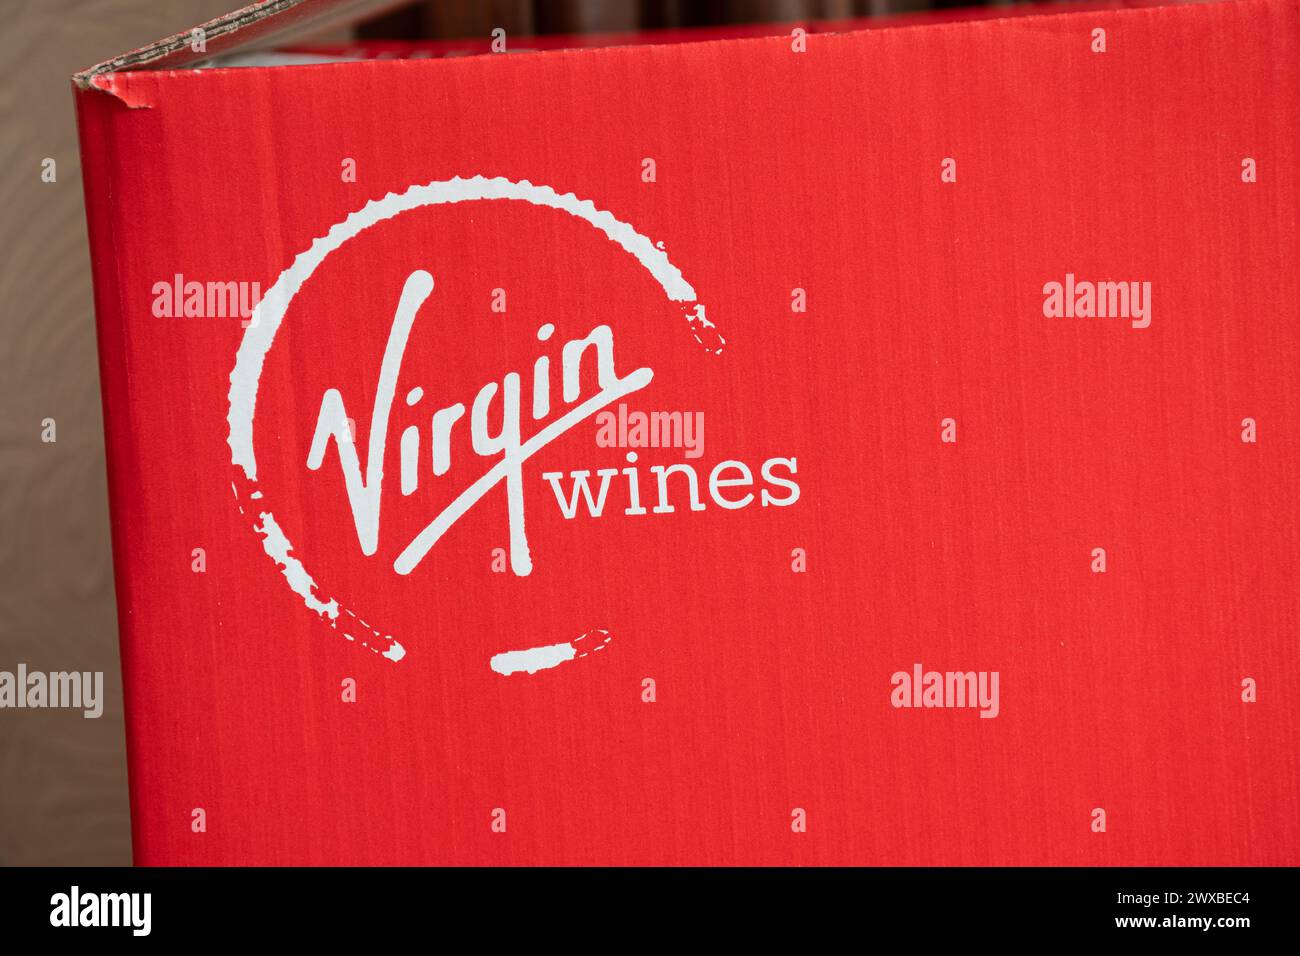 Nom et logo de la société Virgin Wines sur une boîte en carton rouge Banque D'Images